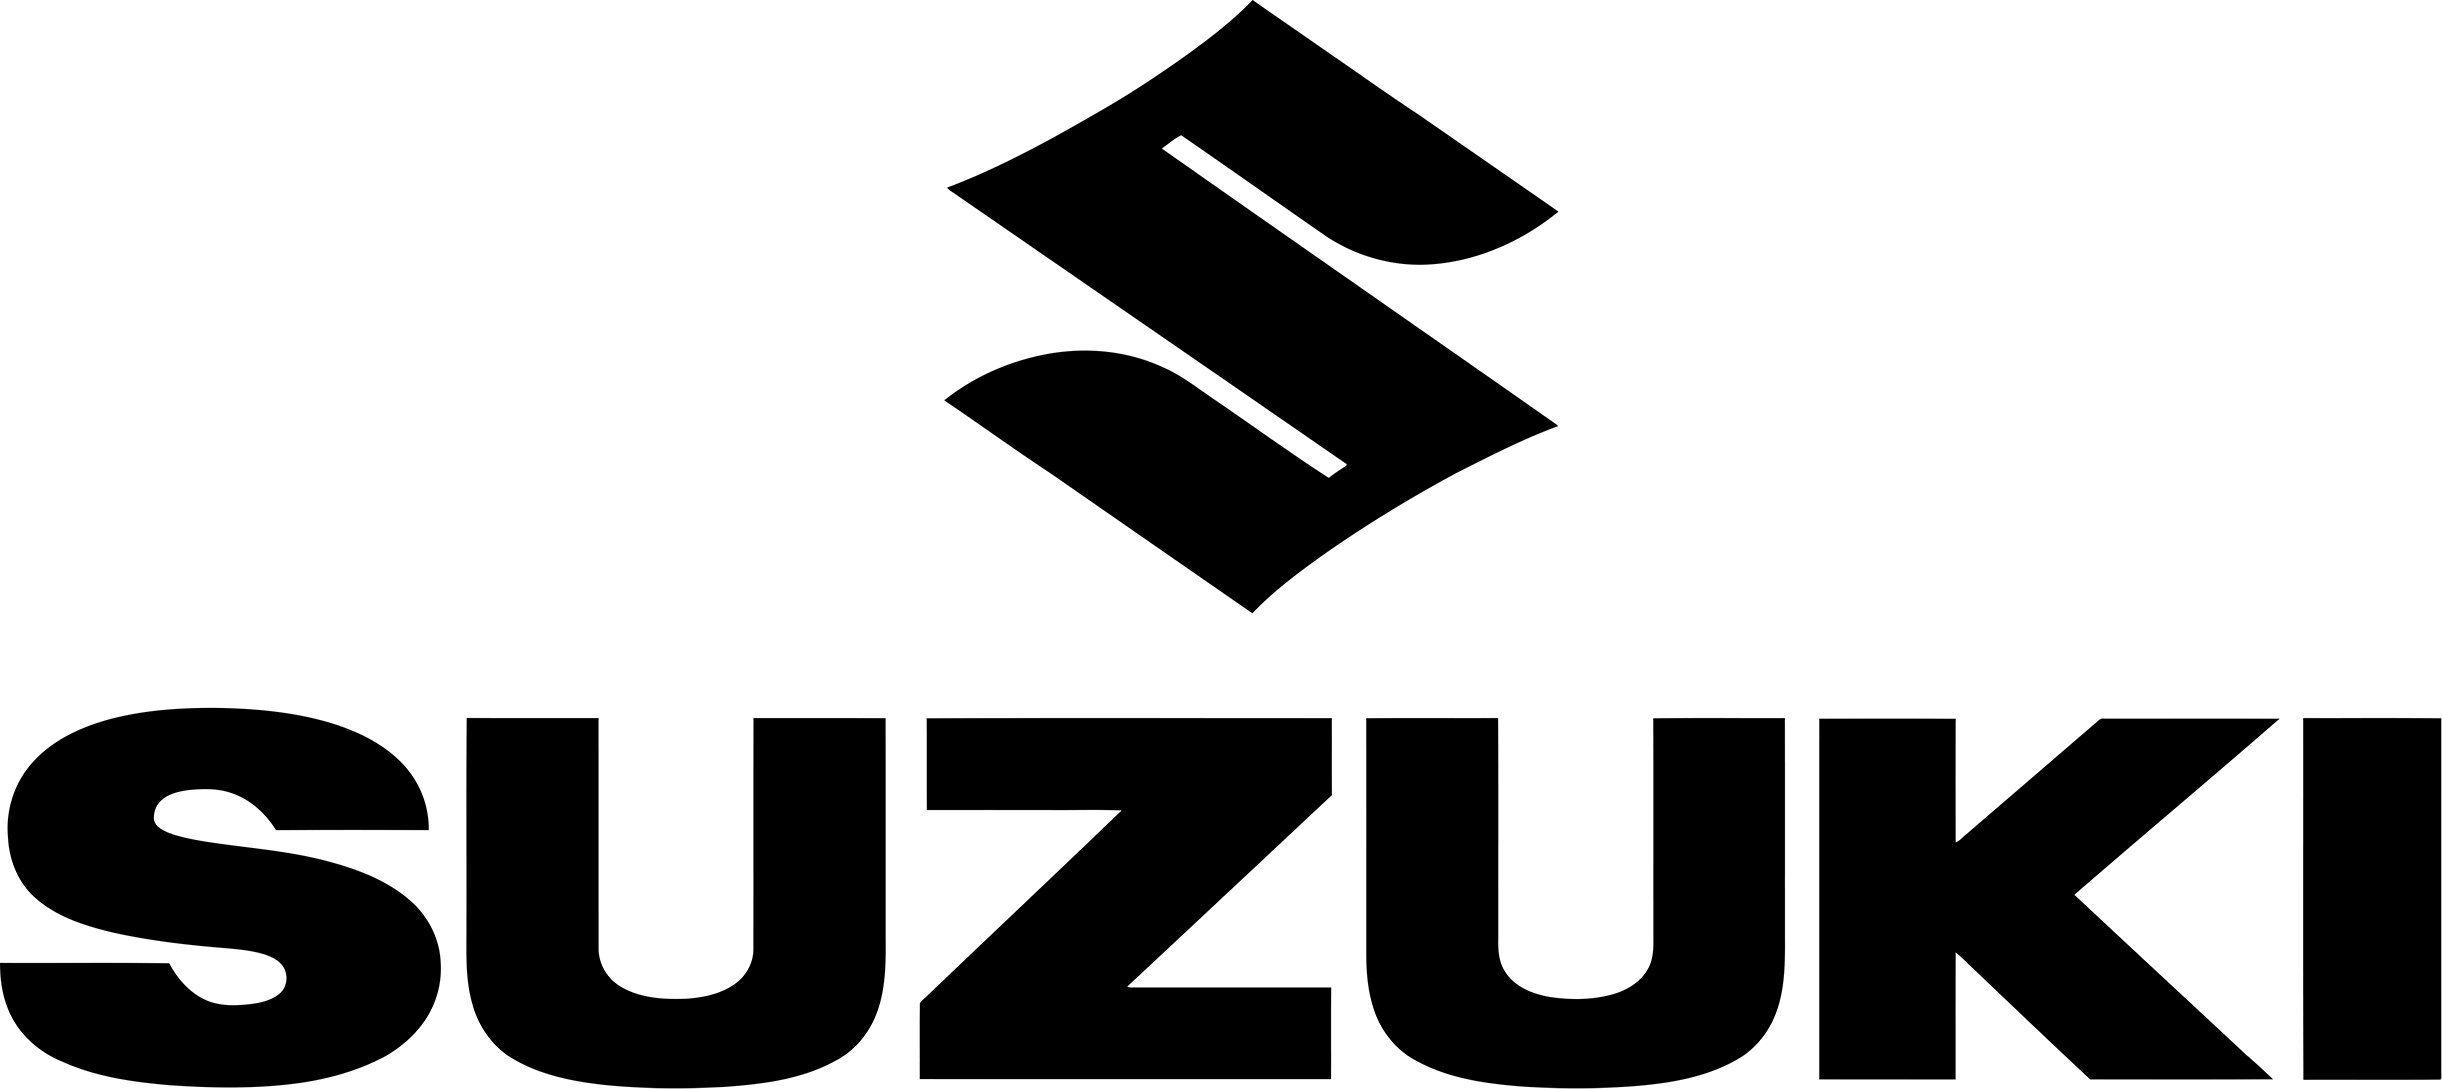 Suzuki Logo - Suzuki Logo Decal / Sticker | Tacticalmindz.com